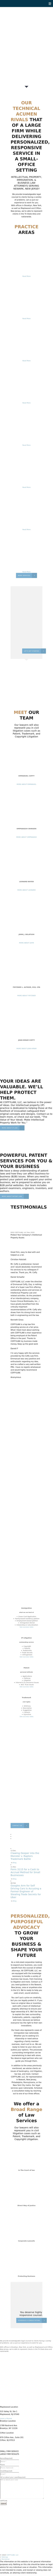 CoffyLaw LLC - Brooklyn NY Lawyers